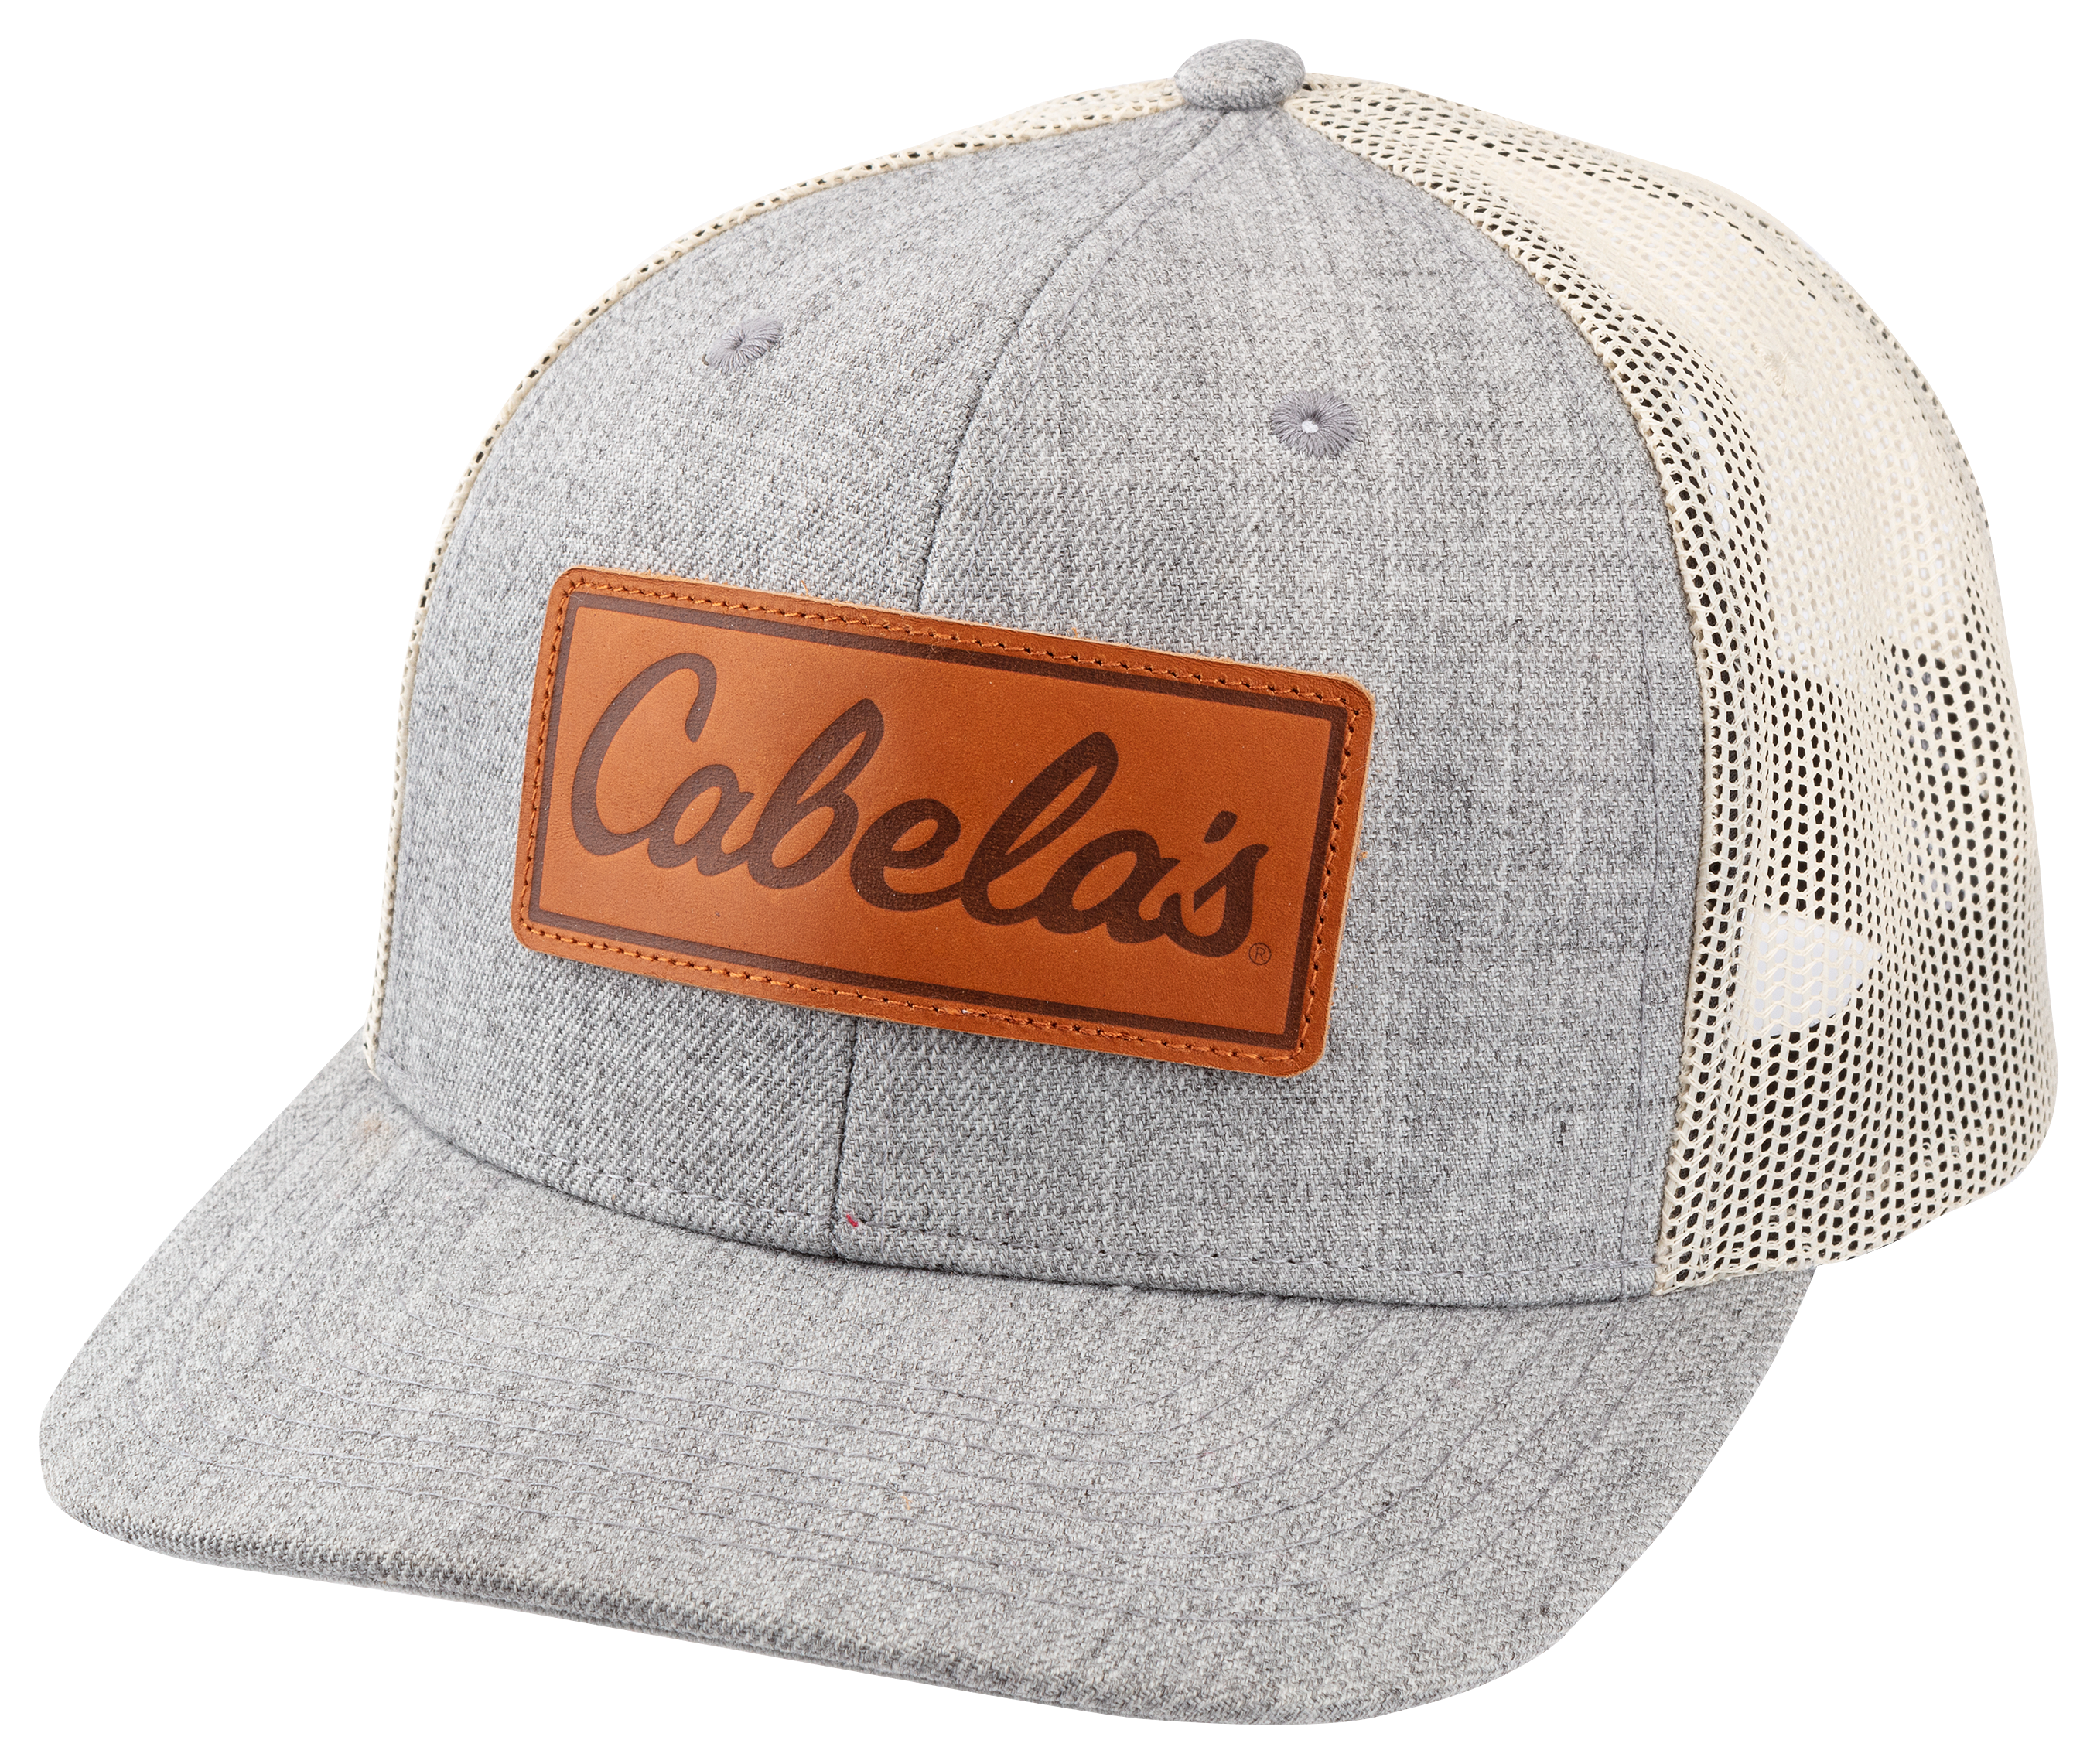 Men's Cabelas Hats